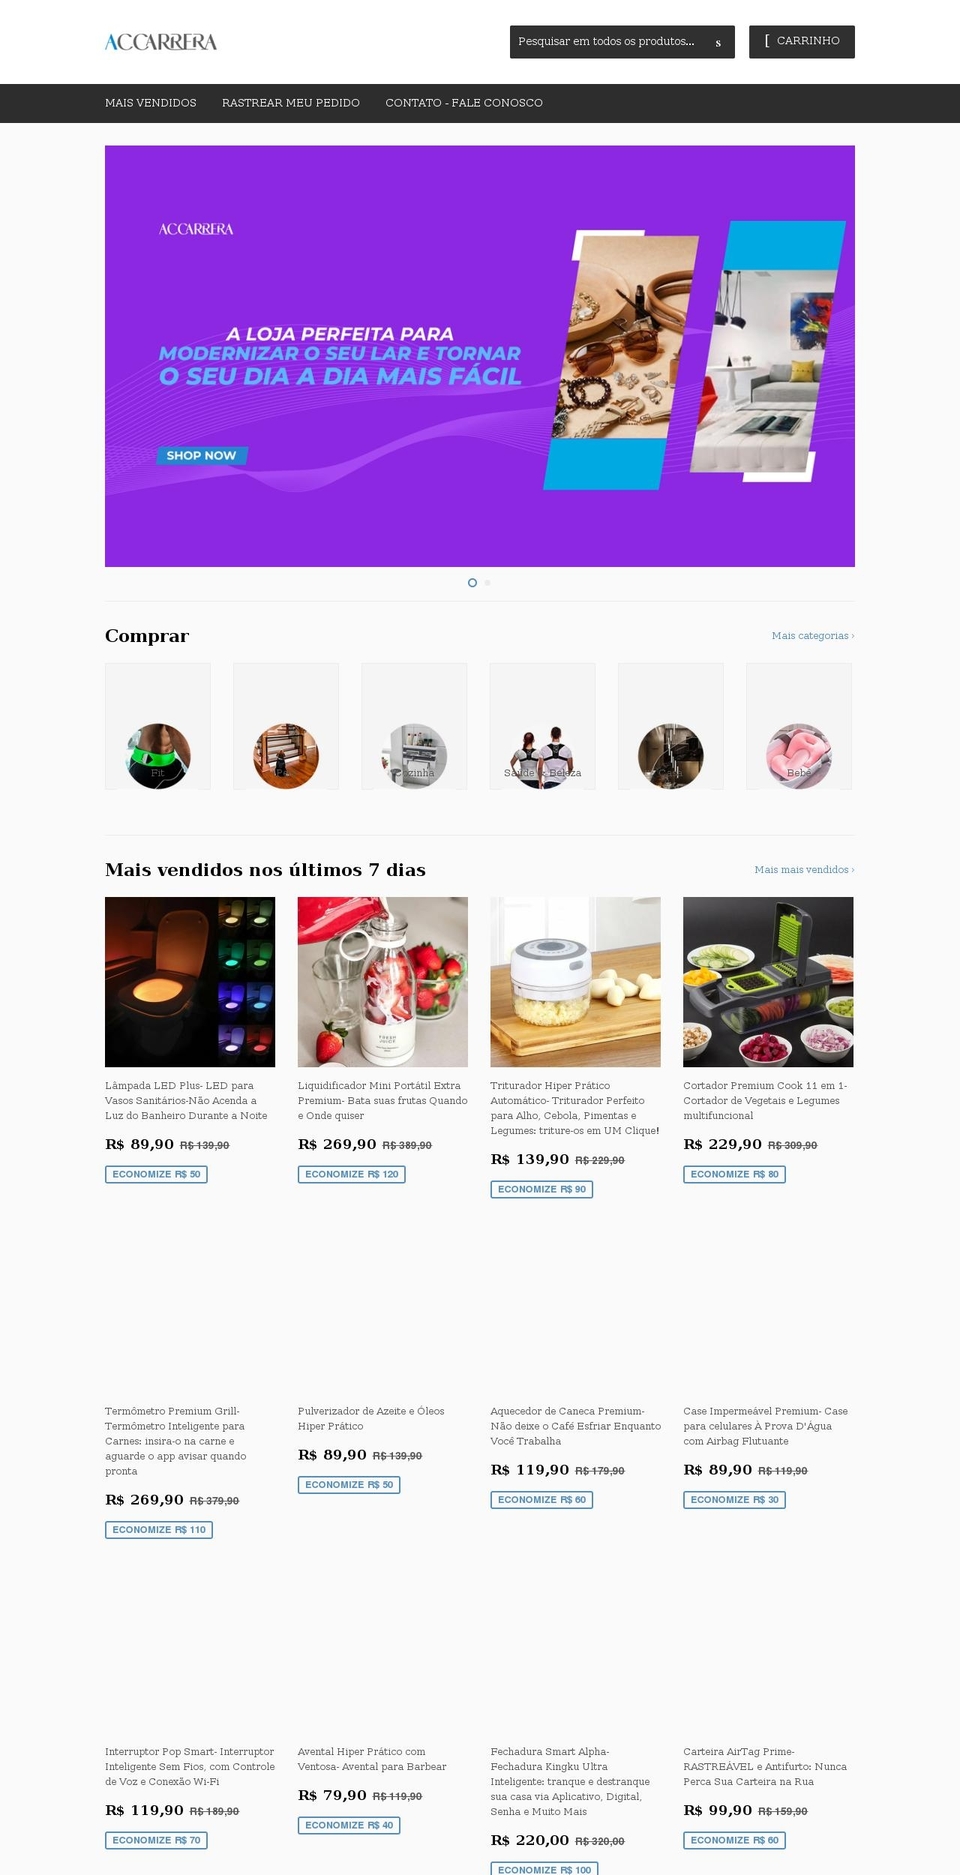 accarrera.com shopify website screenshot